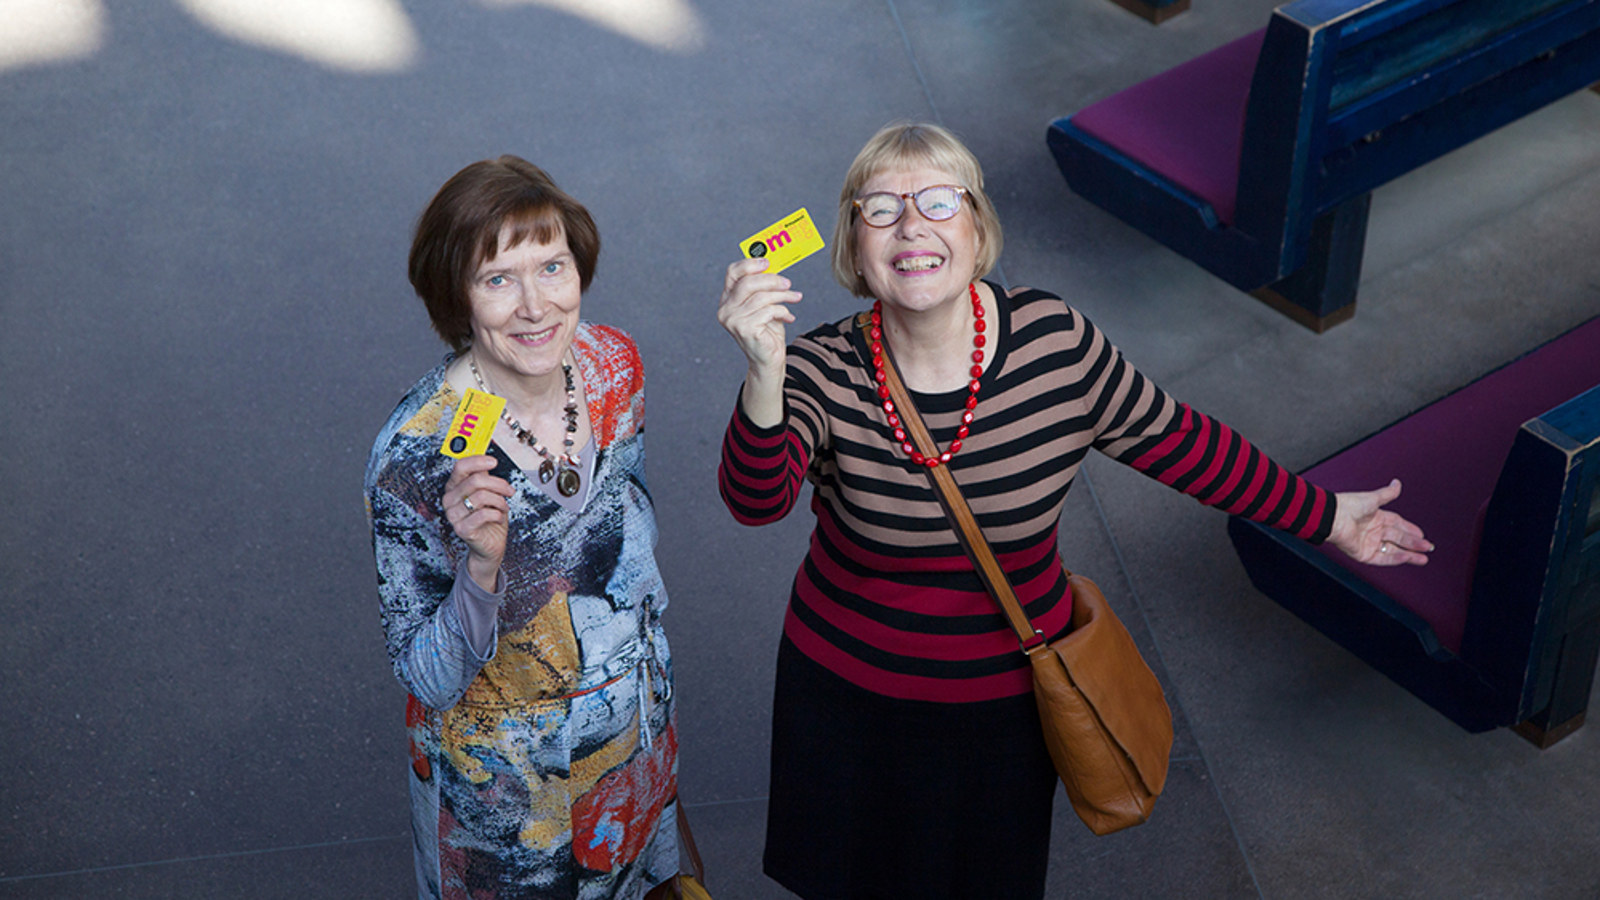 Kuvassa on kaksi keski-ikäistä naista kuvattuna ylhäältä päin.  Oikealla puolella olevalla on oikeassa kädessään museokortti, jota hän iloisesti näyttää. 